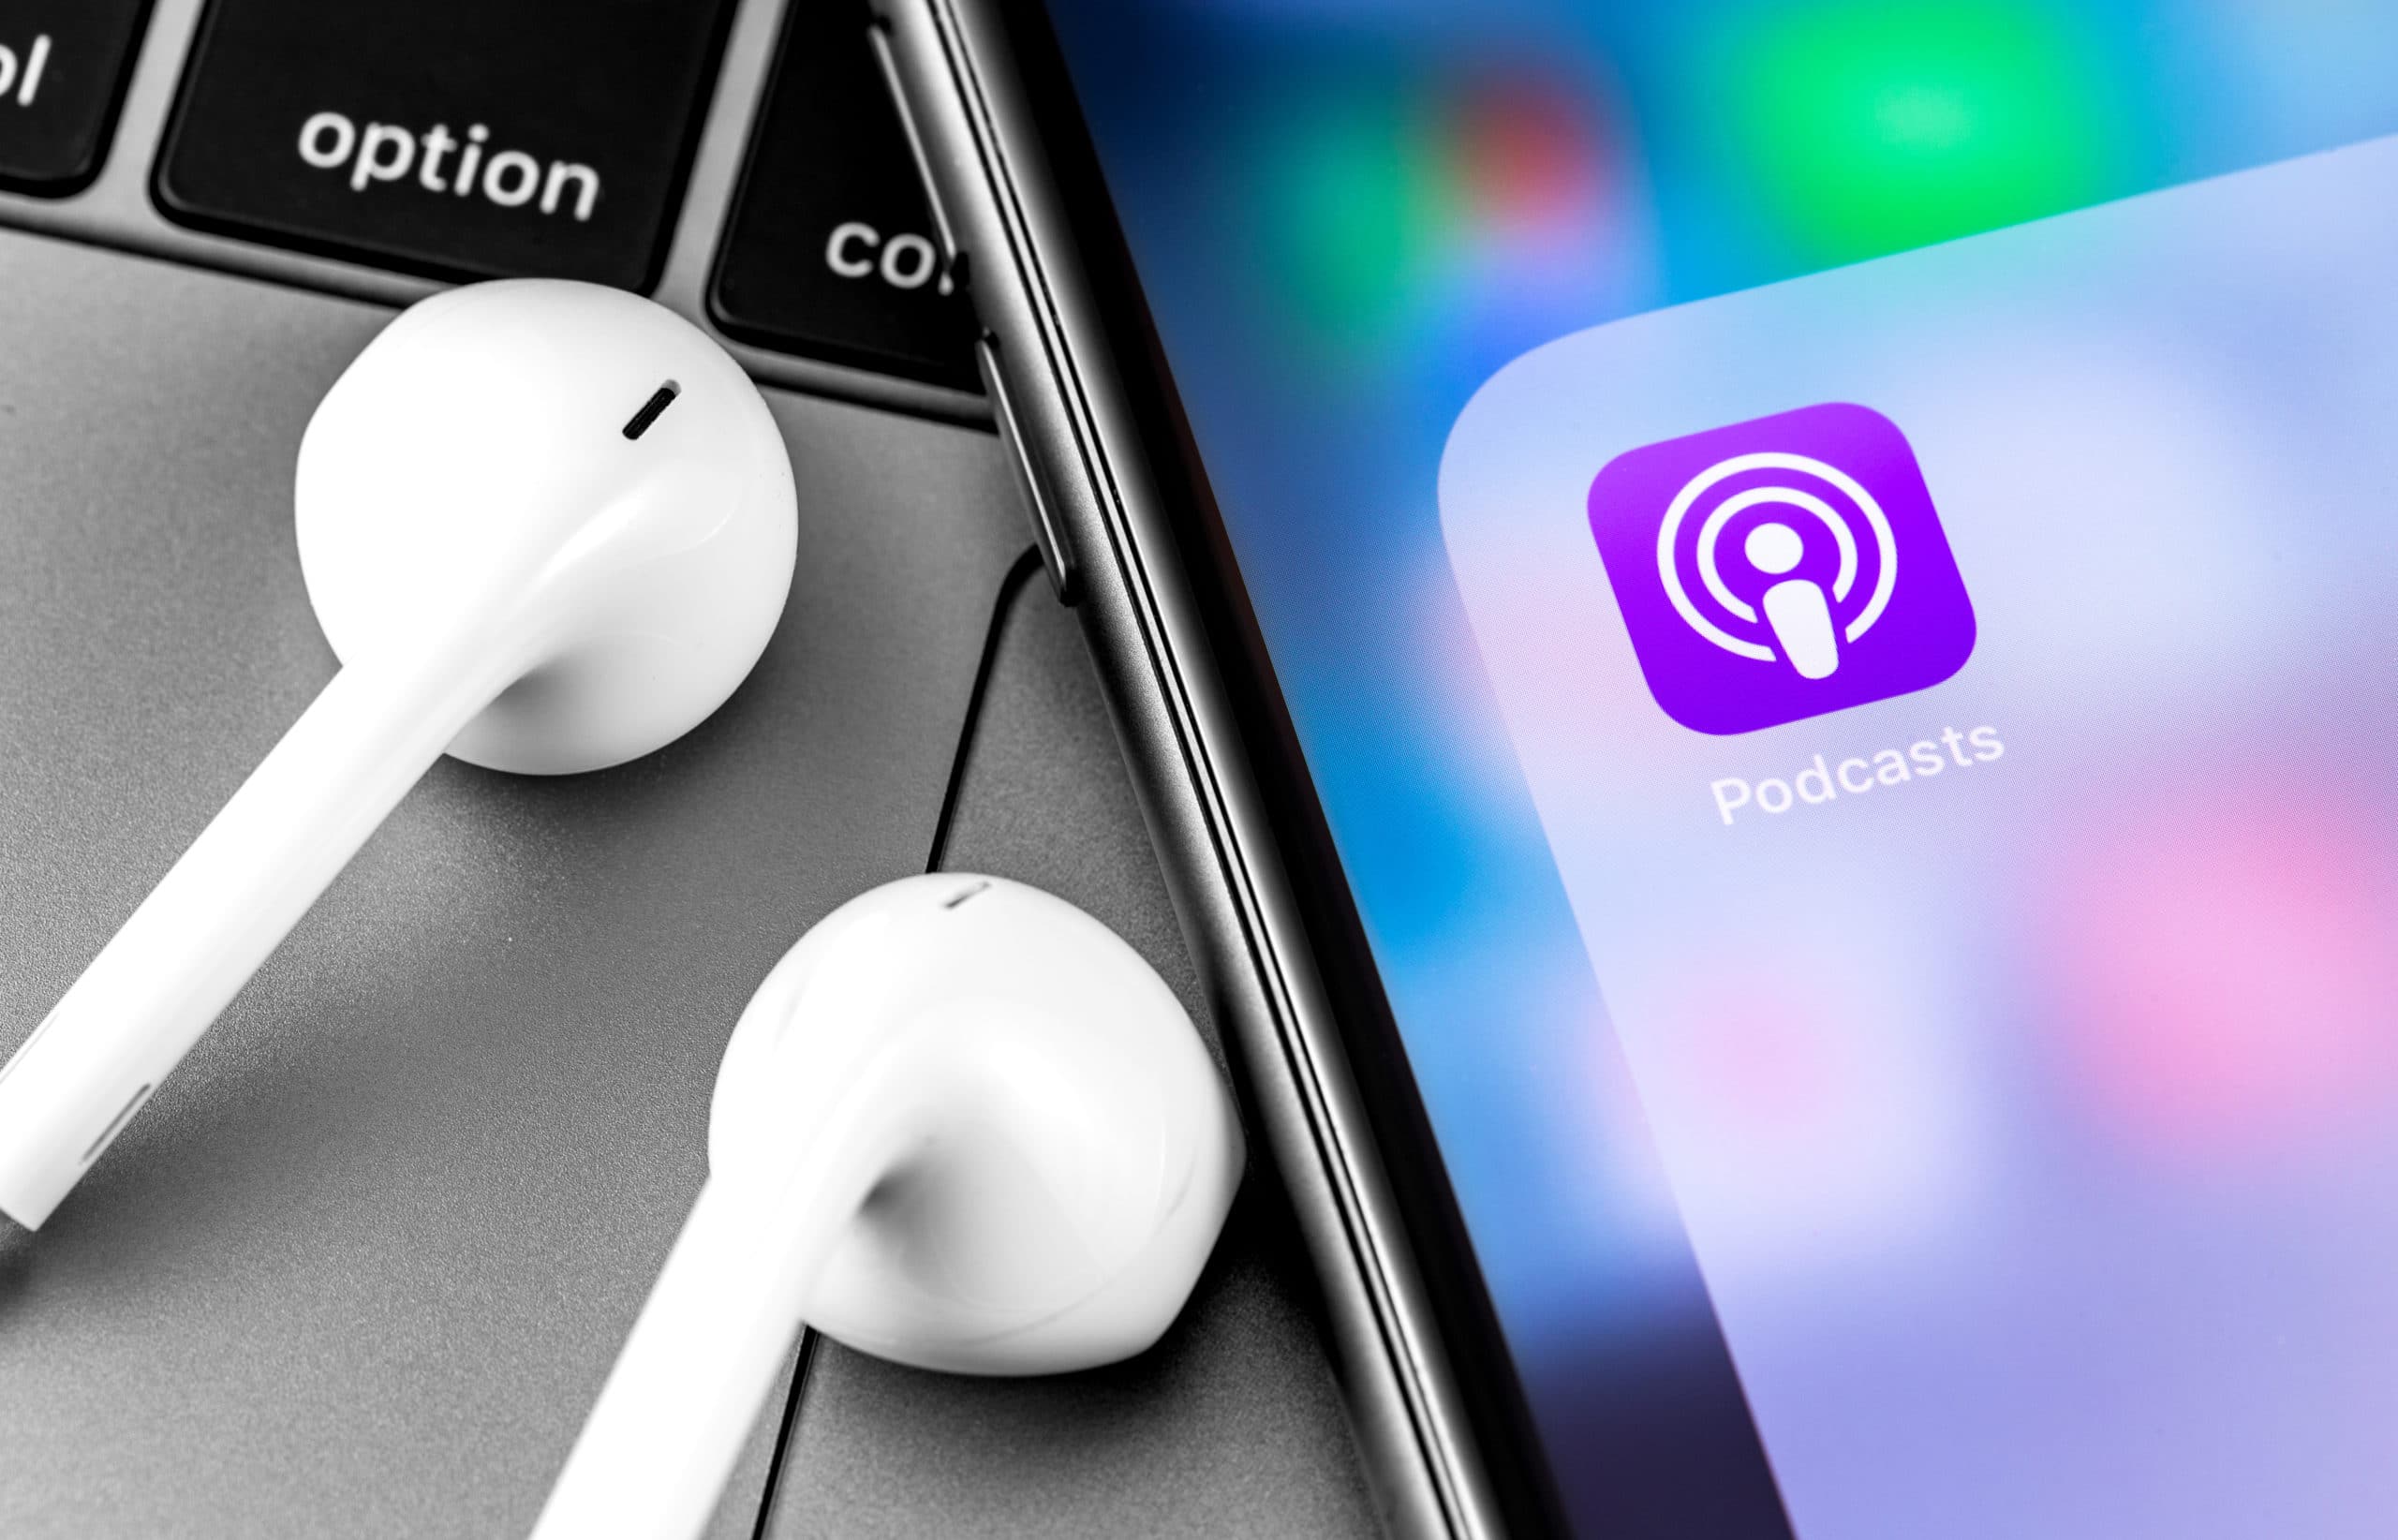 Apple soovib sarja avaldamiseks suurendada podcastide tootmist;  Filmis "Väike hääl" on debüütkuupäev